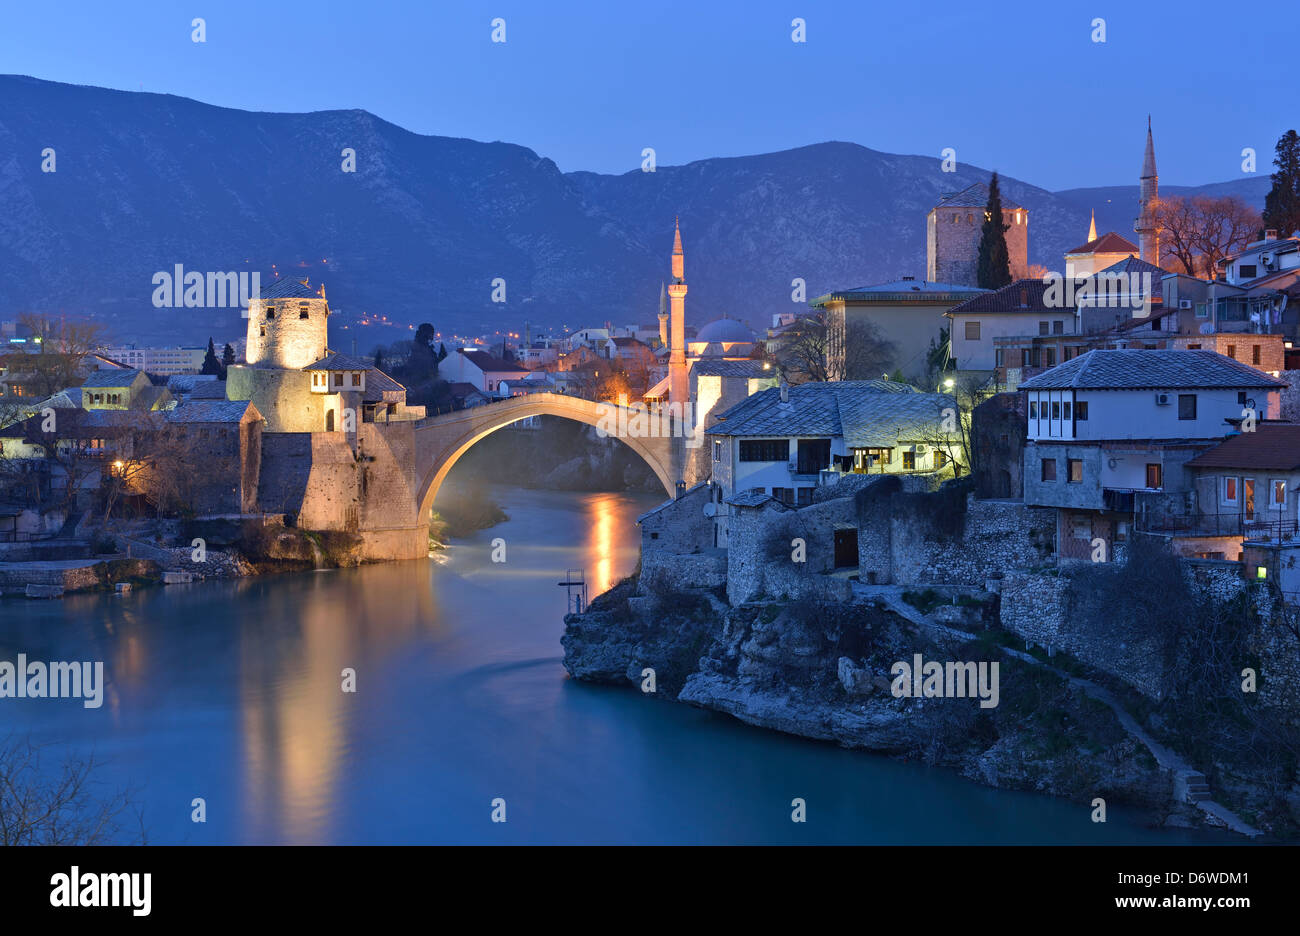 Old Bridge and Neretva river at dusk, Mostar, Bosnia and Herzegovina Stock Photo